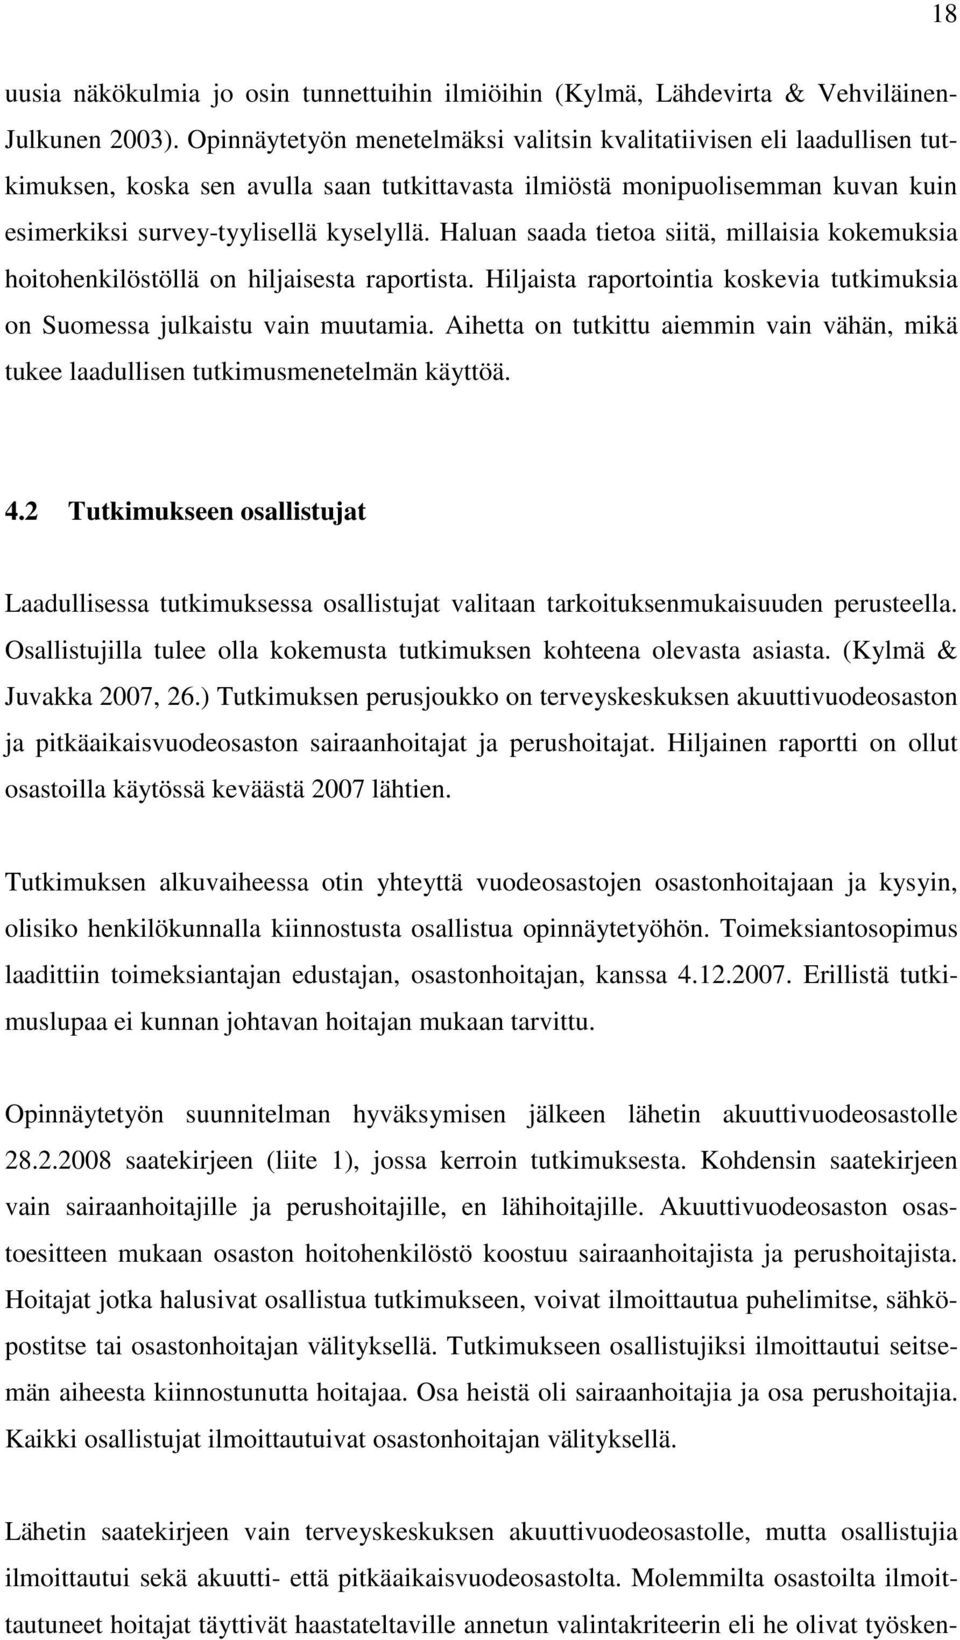 Haluan saada tietoa siitä, millaisia kokemuksia hoitohenkilöstöllä on hiljaisesta raportista. Hiljaista raportointia koskevia tutkimuksia on Suomessa julkaistu vain muutamia.